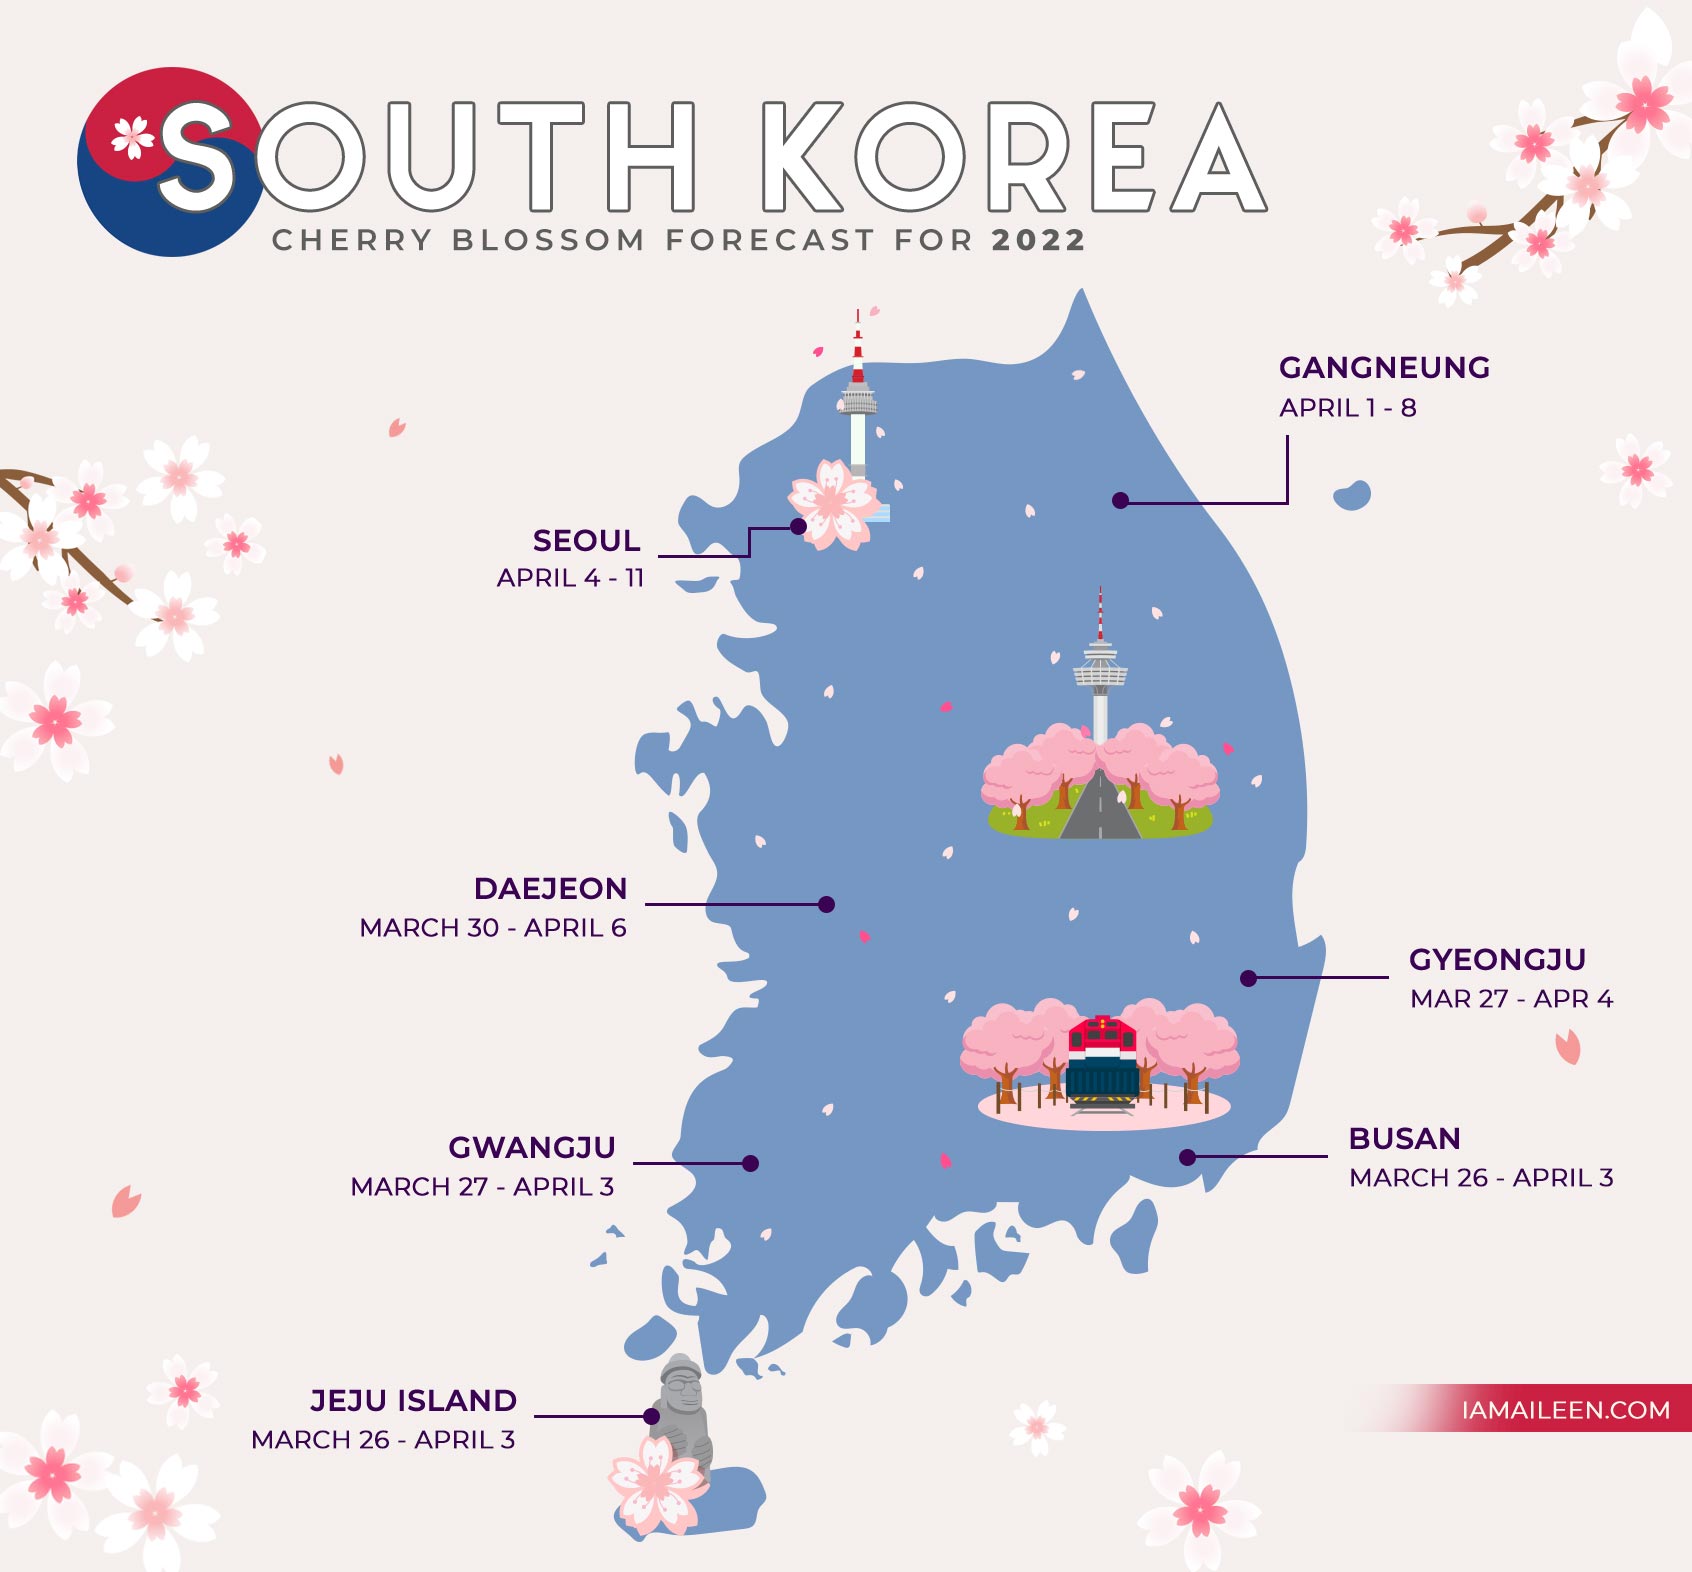 South Korea Cherry Blossom Forecast 2022